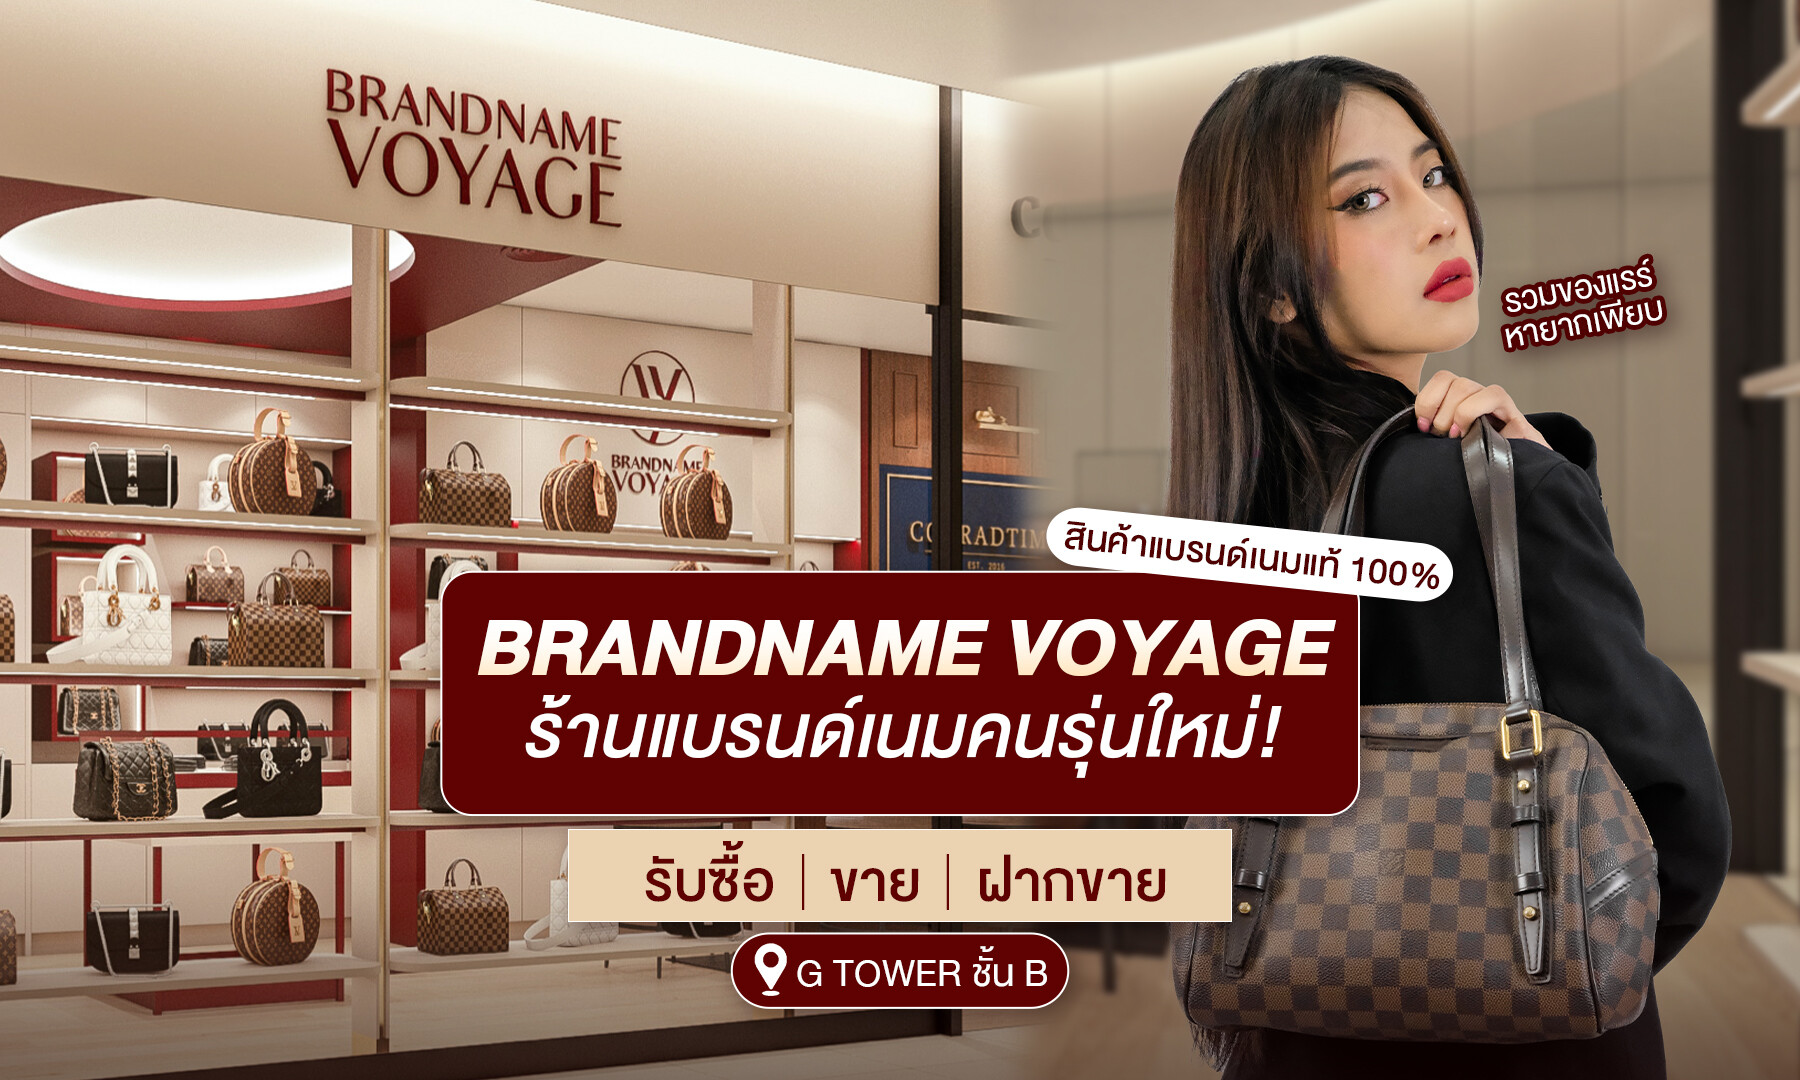 Brandname Voyage - ร้านแบรนด์เนมของคนรุ่นใหม่ รวมของแรร์หายากเพียบ! พร้อมบริการครบวงจร (รับซื้อ-ขาย-ฝากขาย) One Stop Service ที่คุณต้องมา!